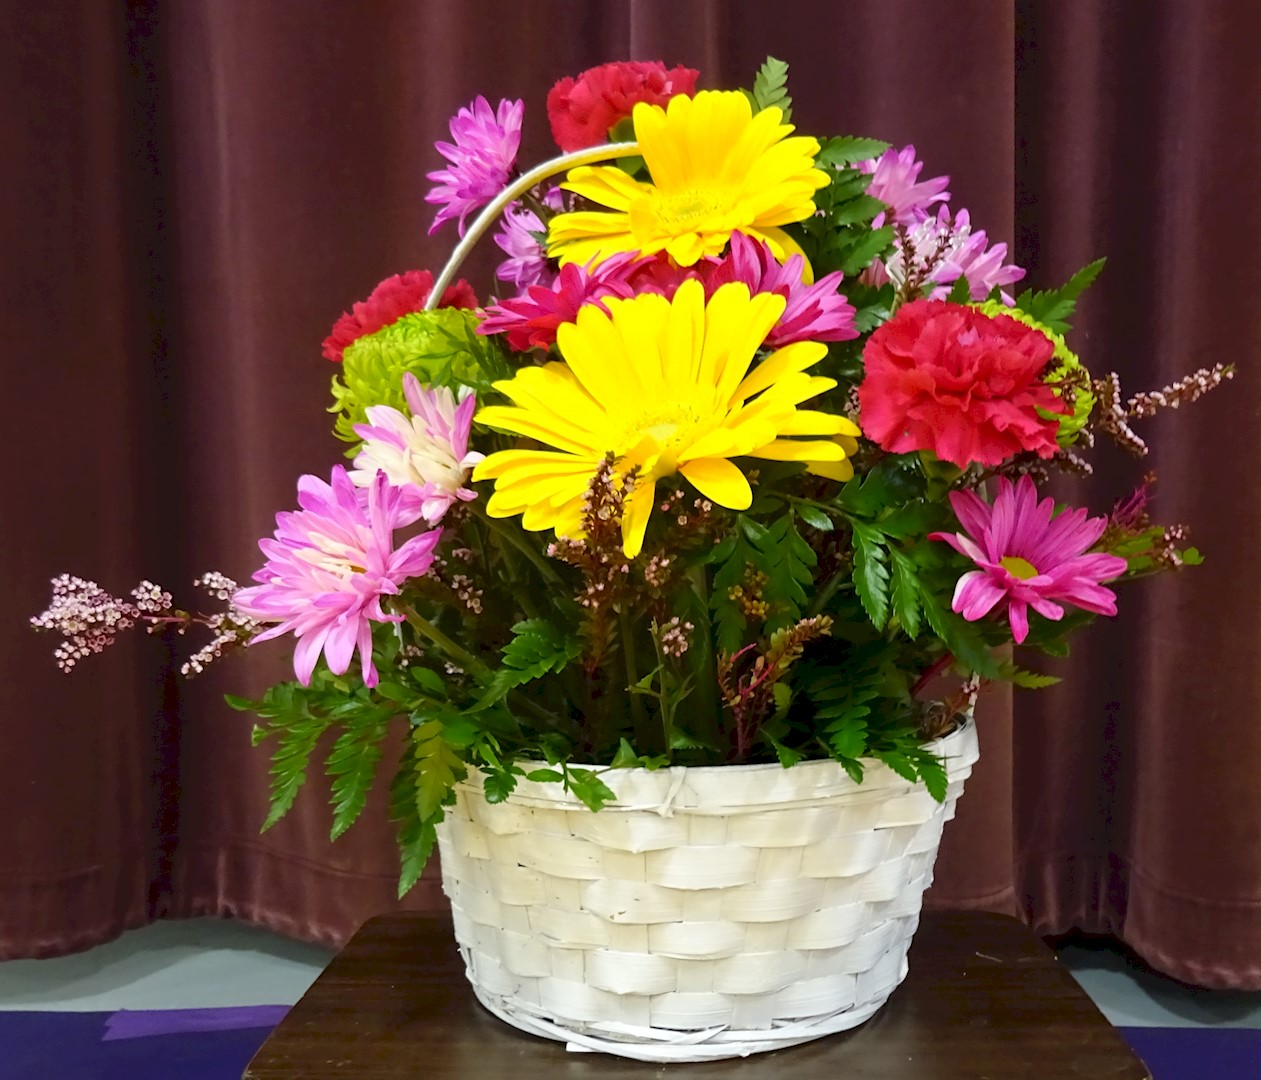 Flowers from Owen, Bonnie, Kassidy, Kwincy, Tia, Tara, Josh, and Families